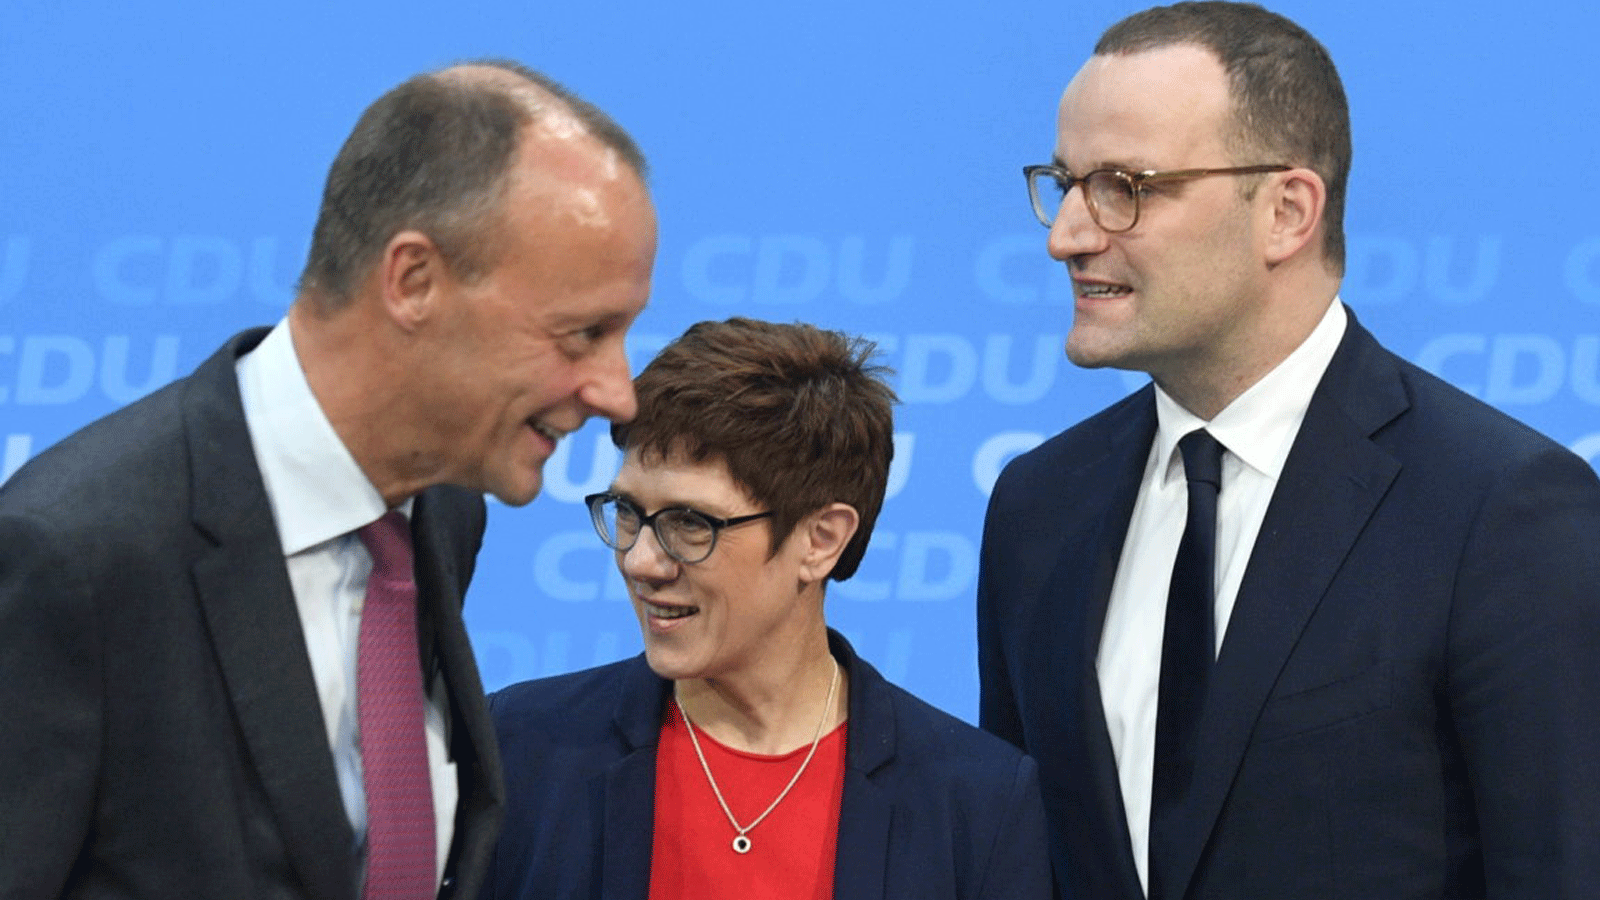 فريدريك ميرز، إلى اليسار، أنجريت كرامب-كارينباور وجينز سبان في مواجهة لقيادة الديمقراطيين المسيحيين في ألمانيا